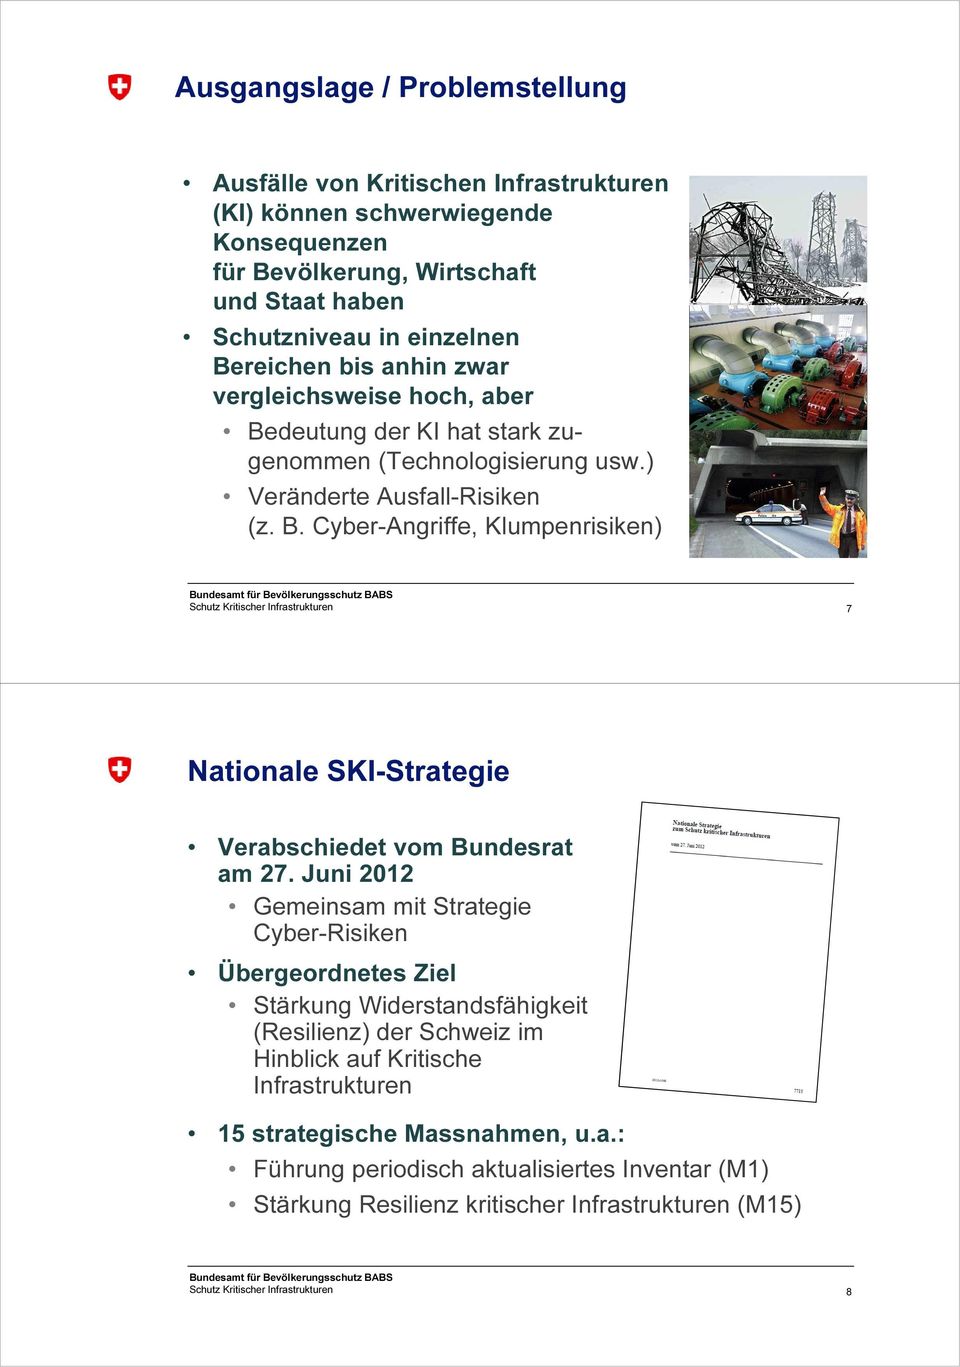 Juni 2012 Gemeinsam mit Strategie Cyber-Risiken Übergeordnetes Ziel Stärkung Widerstandsfähigkeit (Resilienz) der Schweiz im Hinblick auf Kritische Infrastrukturen 15 strategische